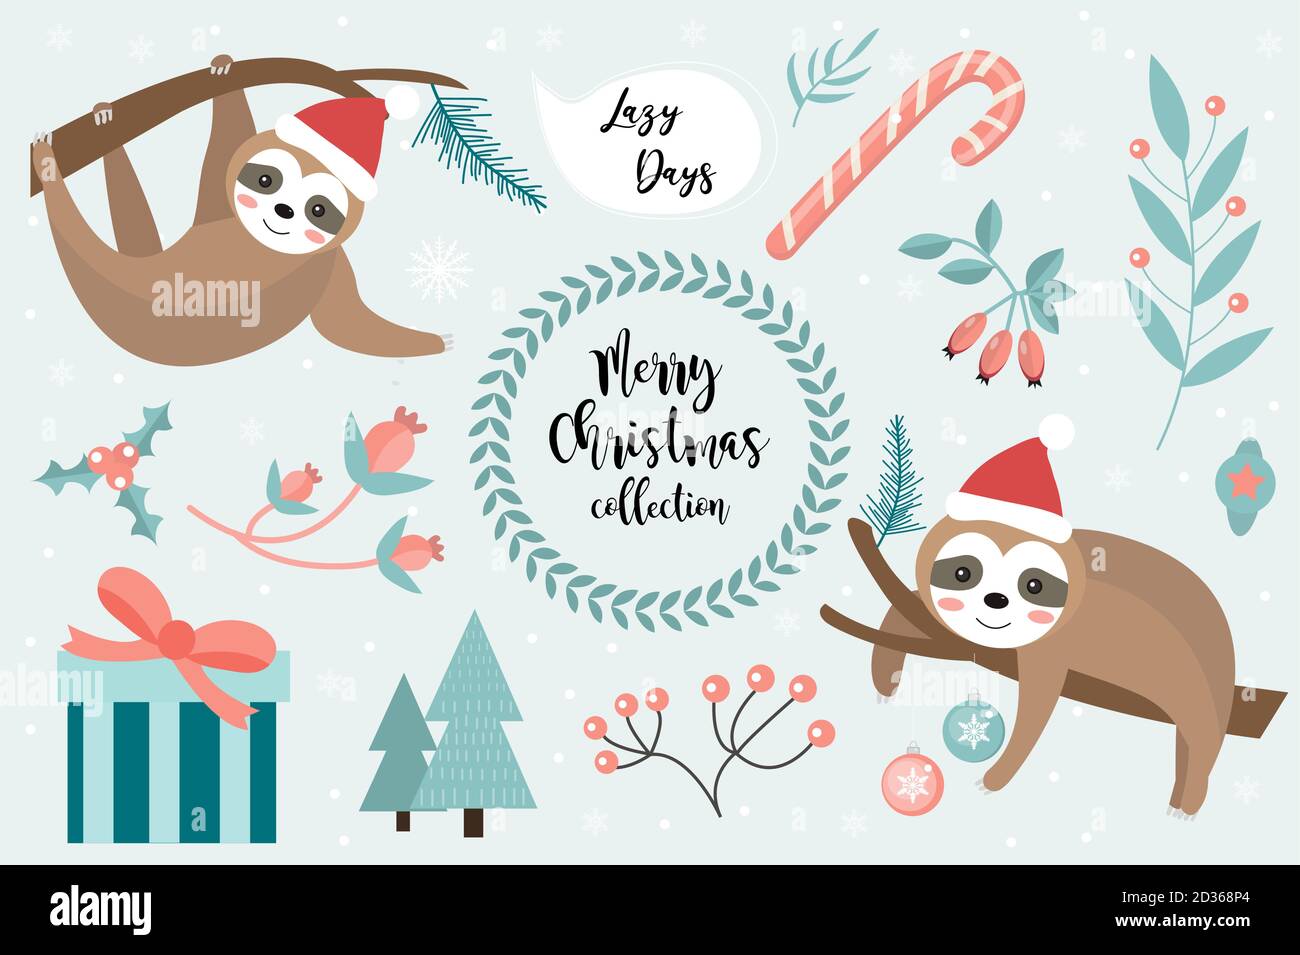 Niedliche Faultier Frohe weihnachten Set. Sammlung von Design-Elementen mit ein wenig Faultiere in einem Hut von Santa Claus, Schneeflocken und einem Weihnachtsbaum. Vektor Stock Vektor